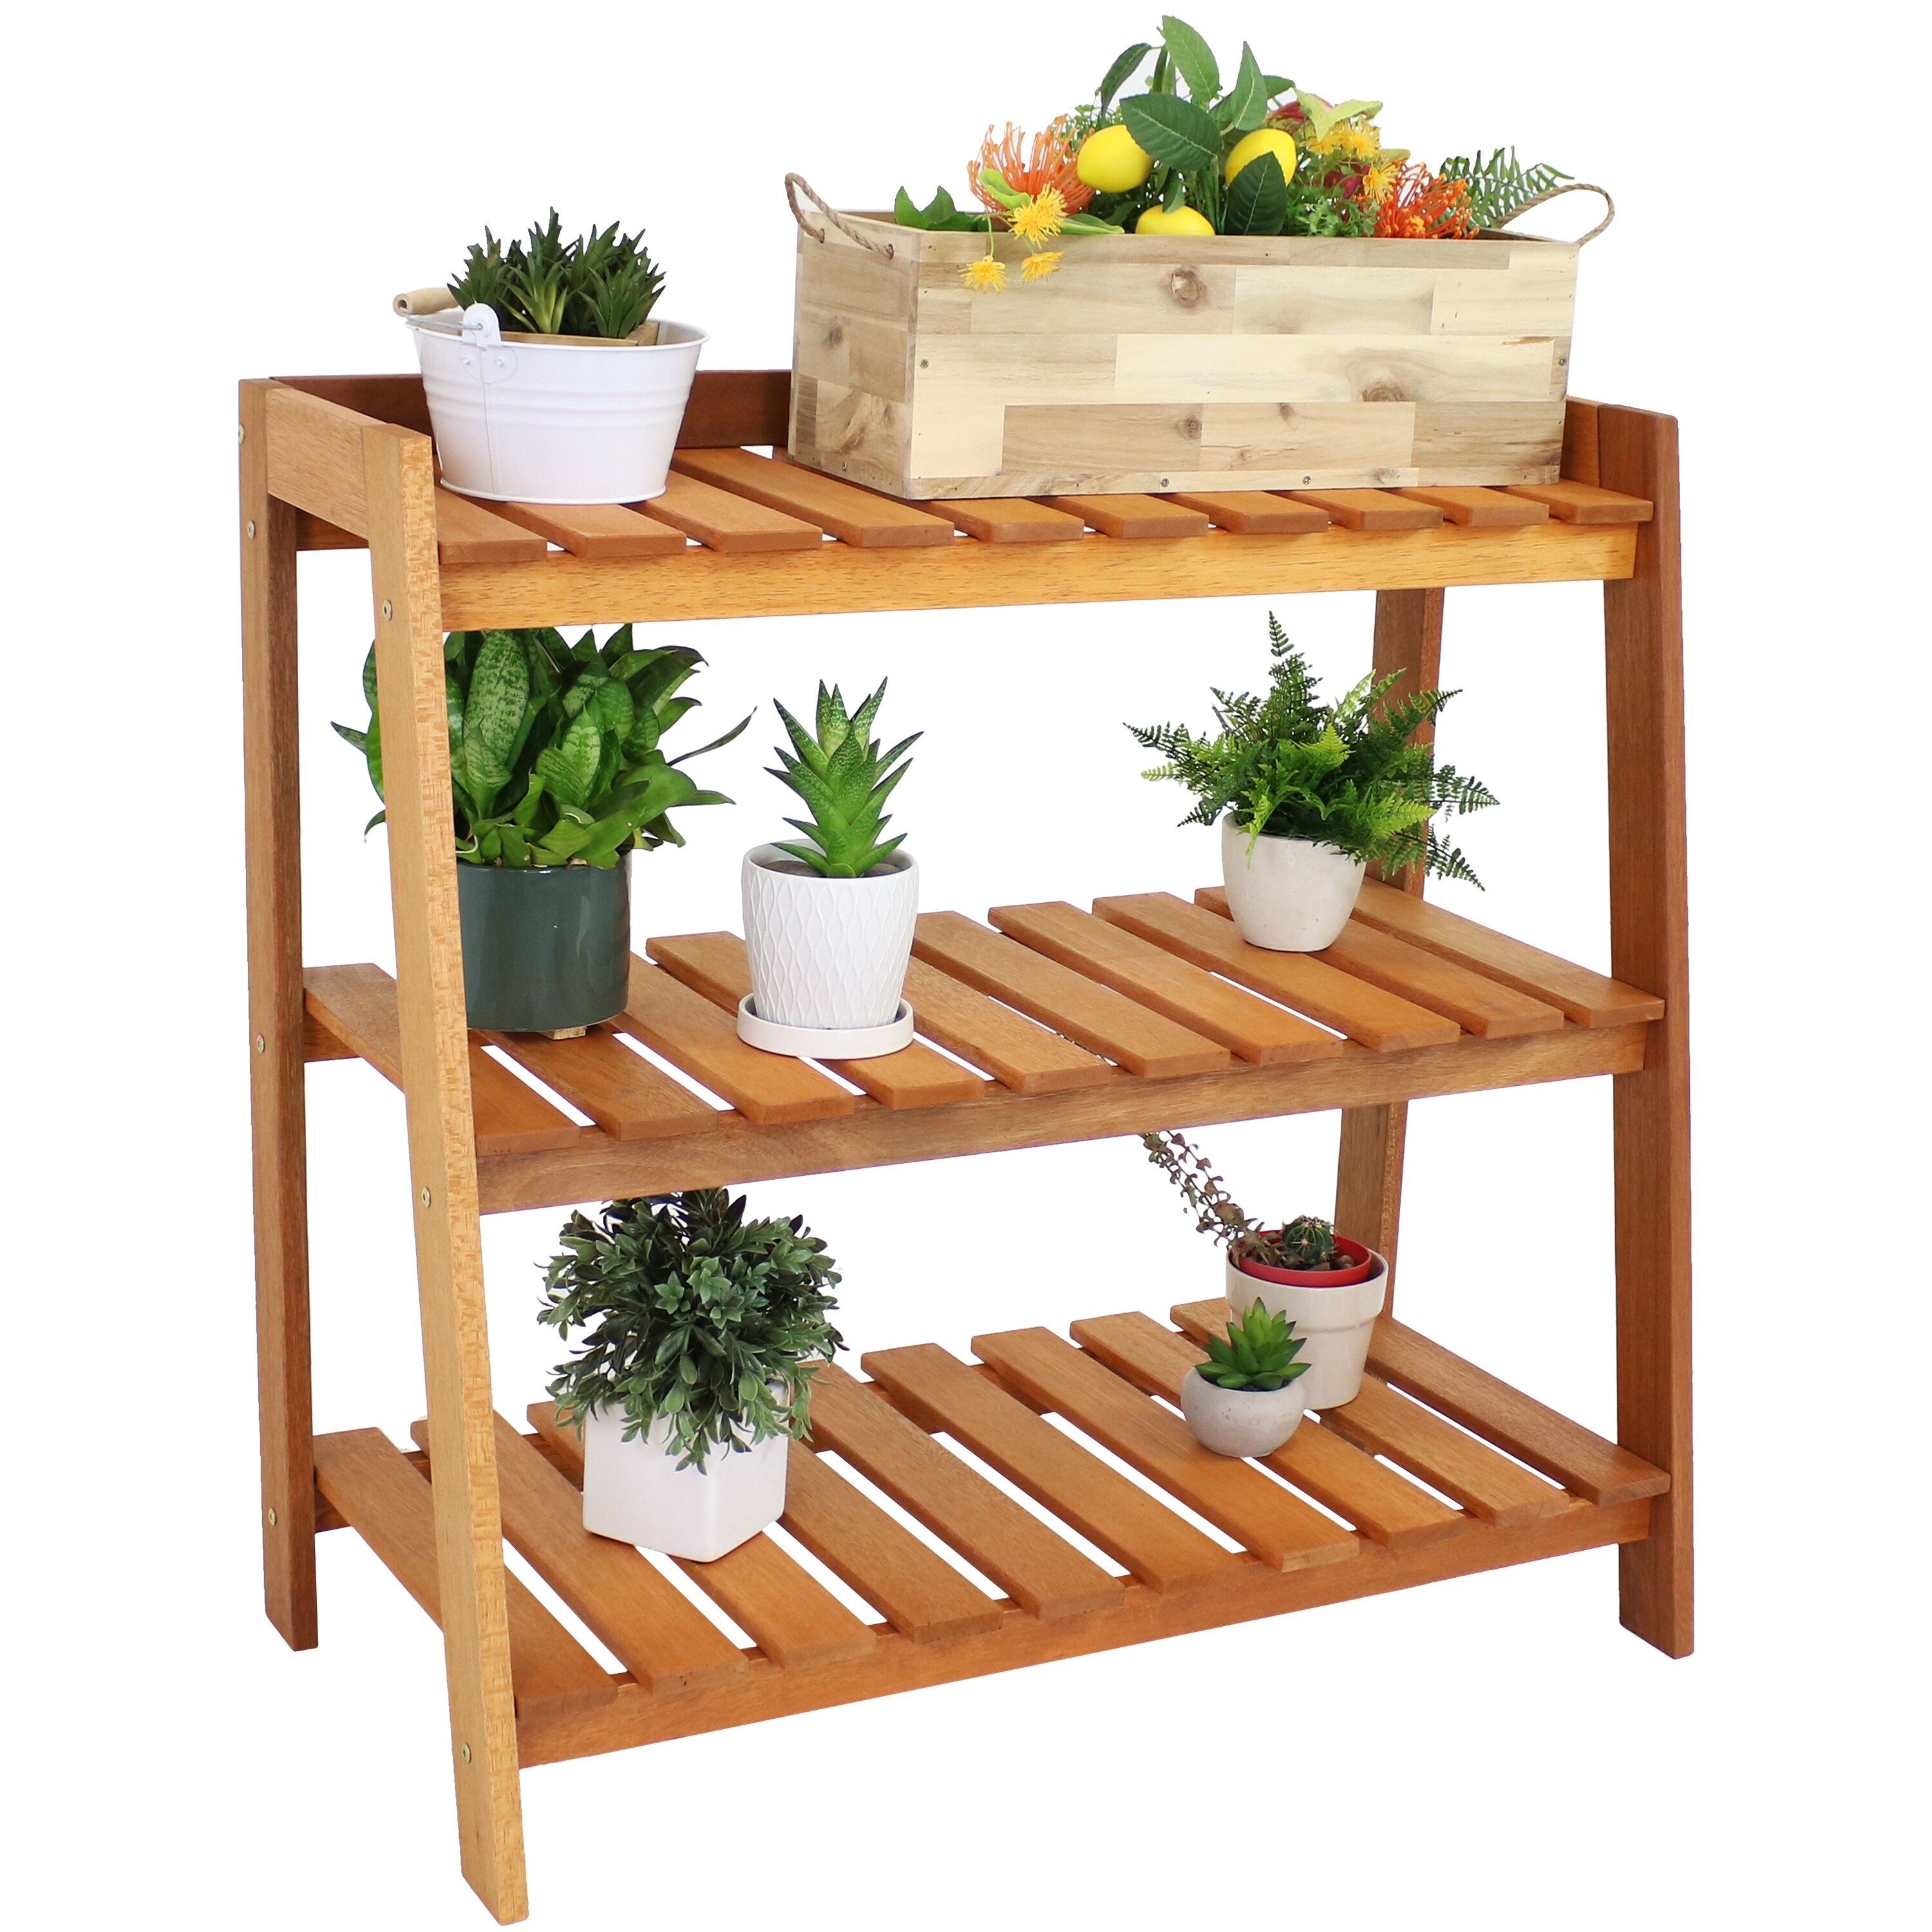 Sunnydaze Meranti Wood Garden Shelf with Teak Oil Finish - 36" x 18" x 34.5"